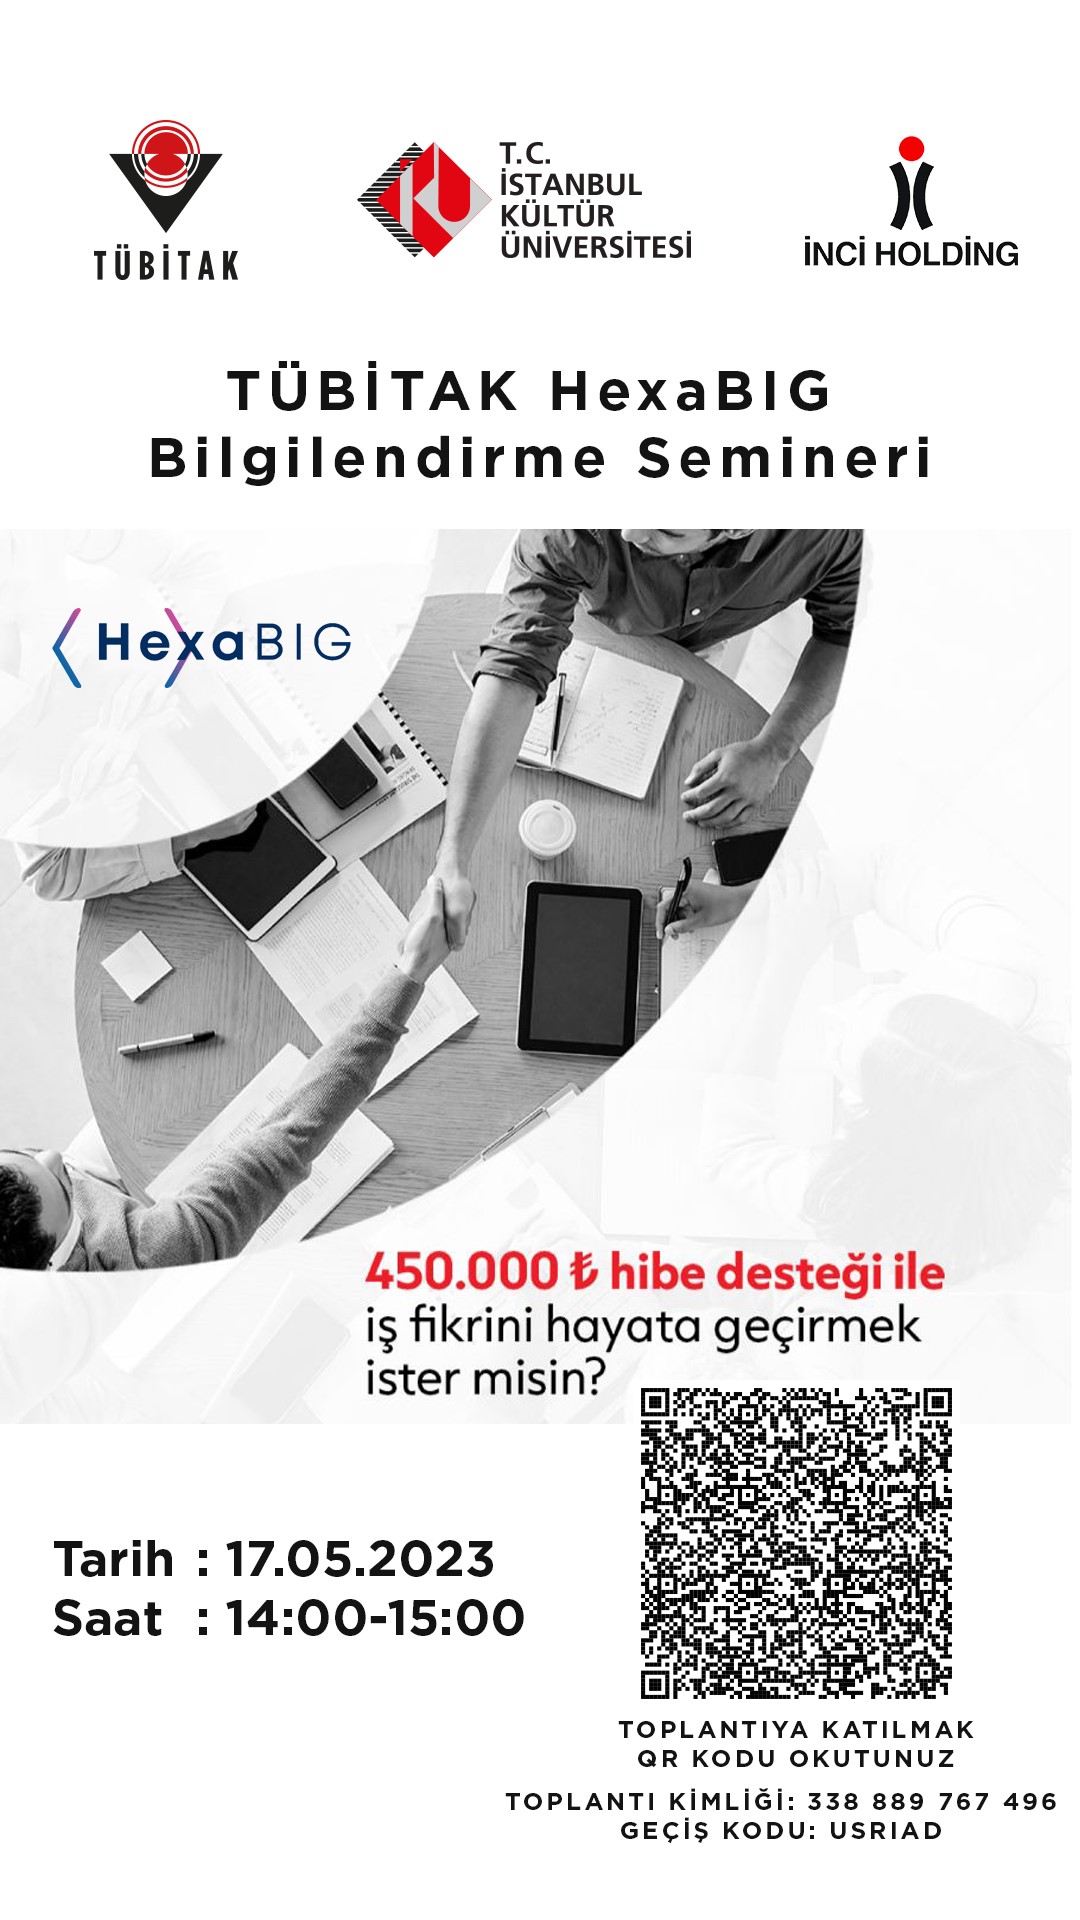 “HexaBIG Teknogirişim Sermaye Desteği Programı"